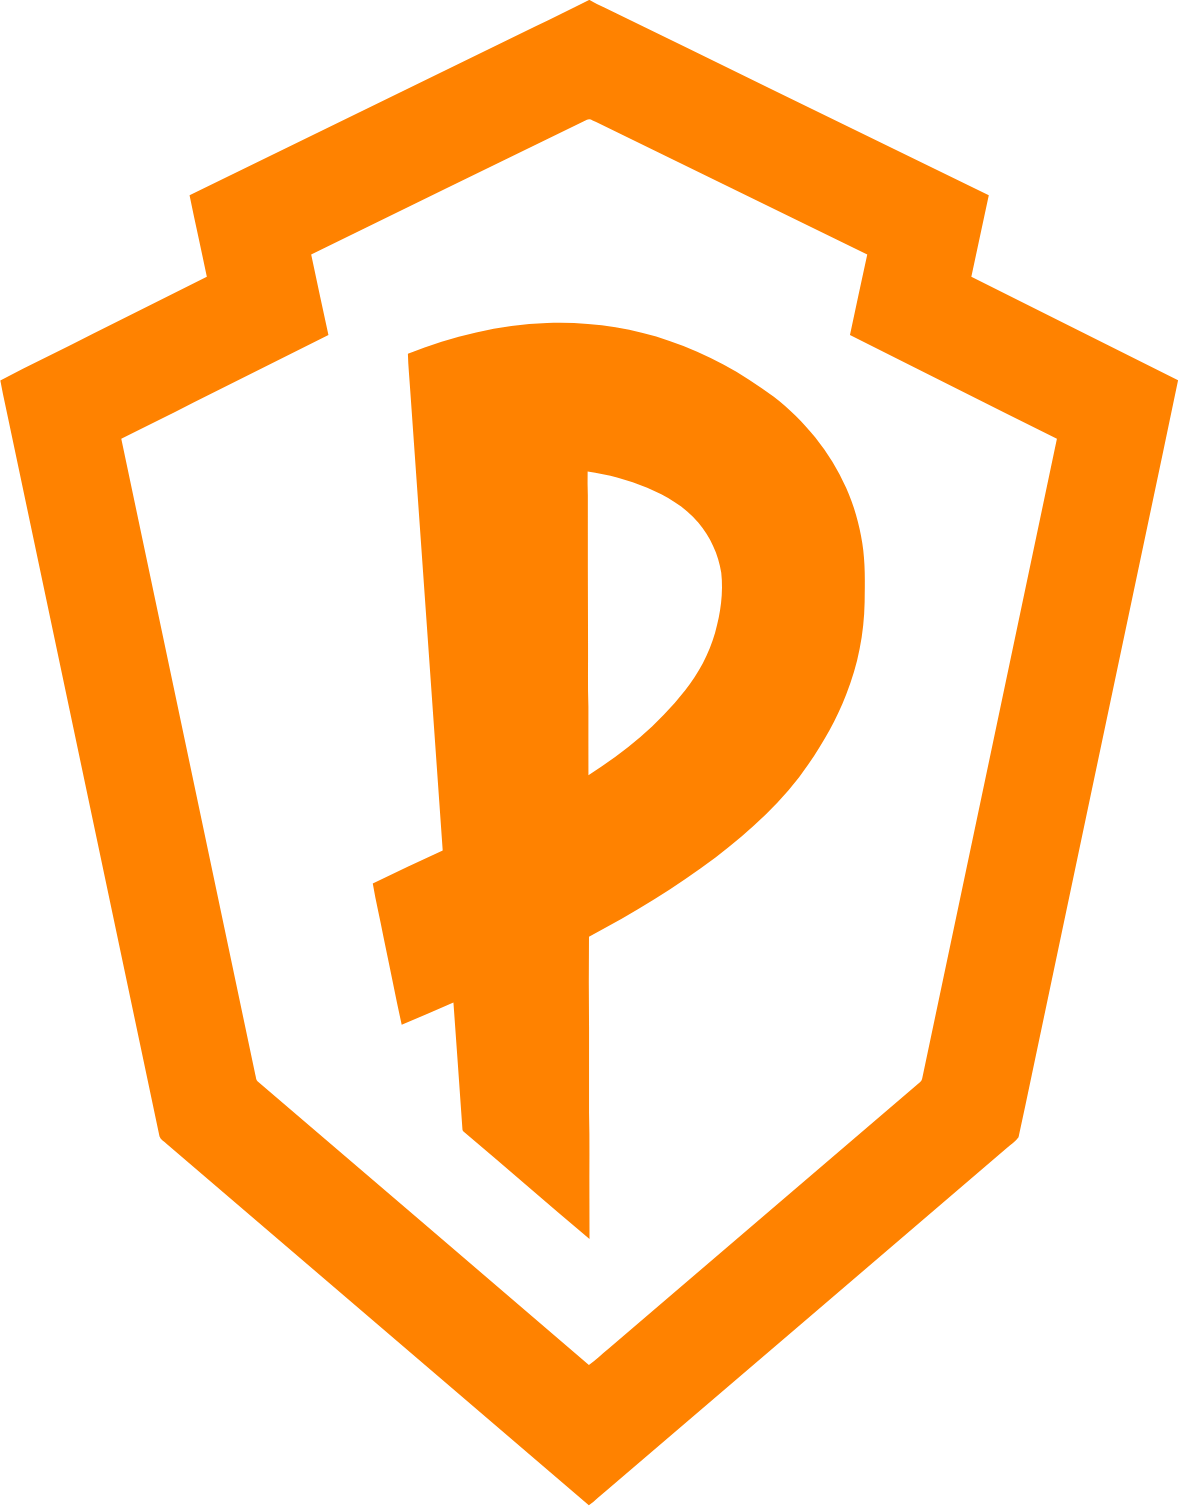 Playstudios logo (PNG transparent)